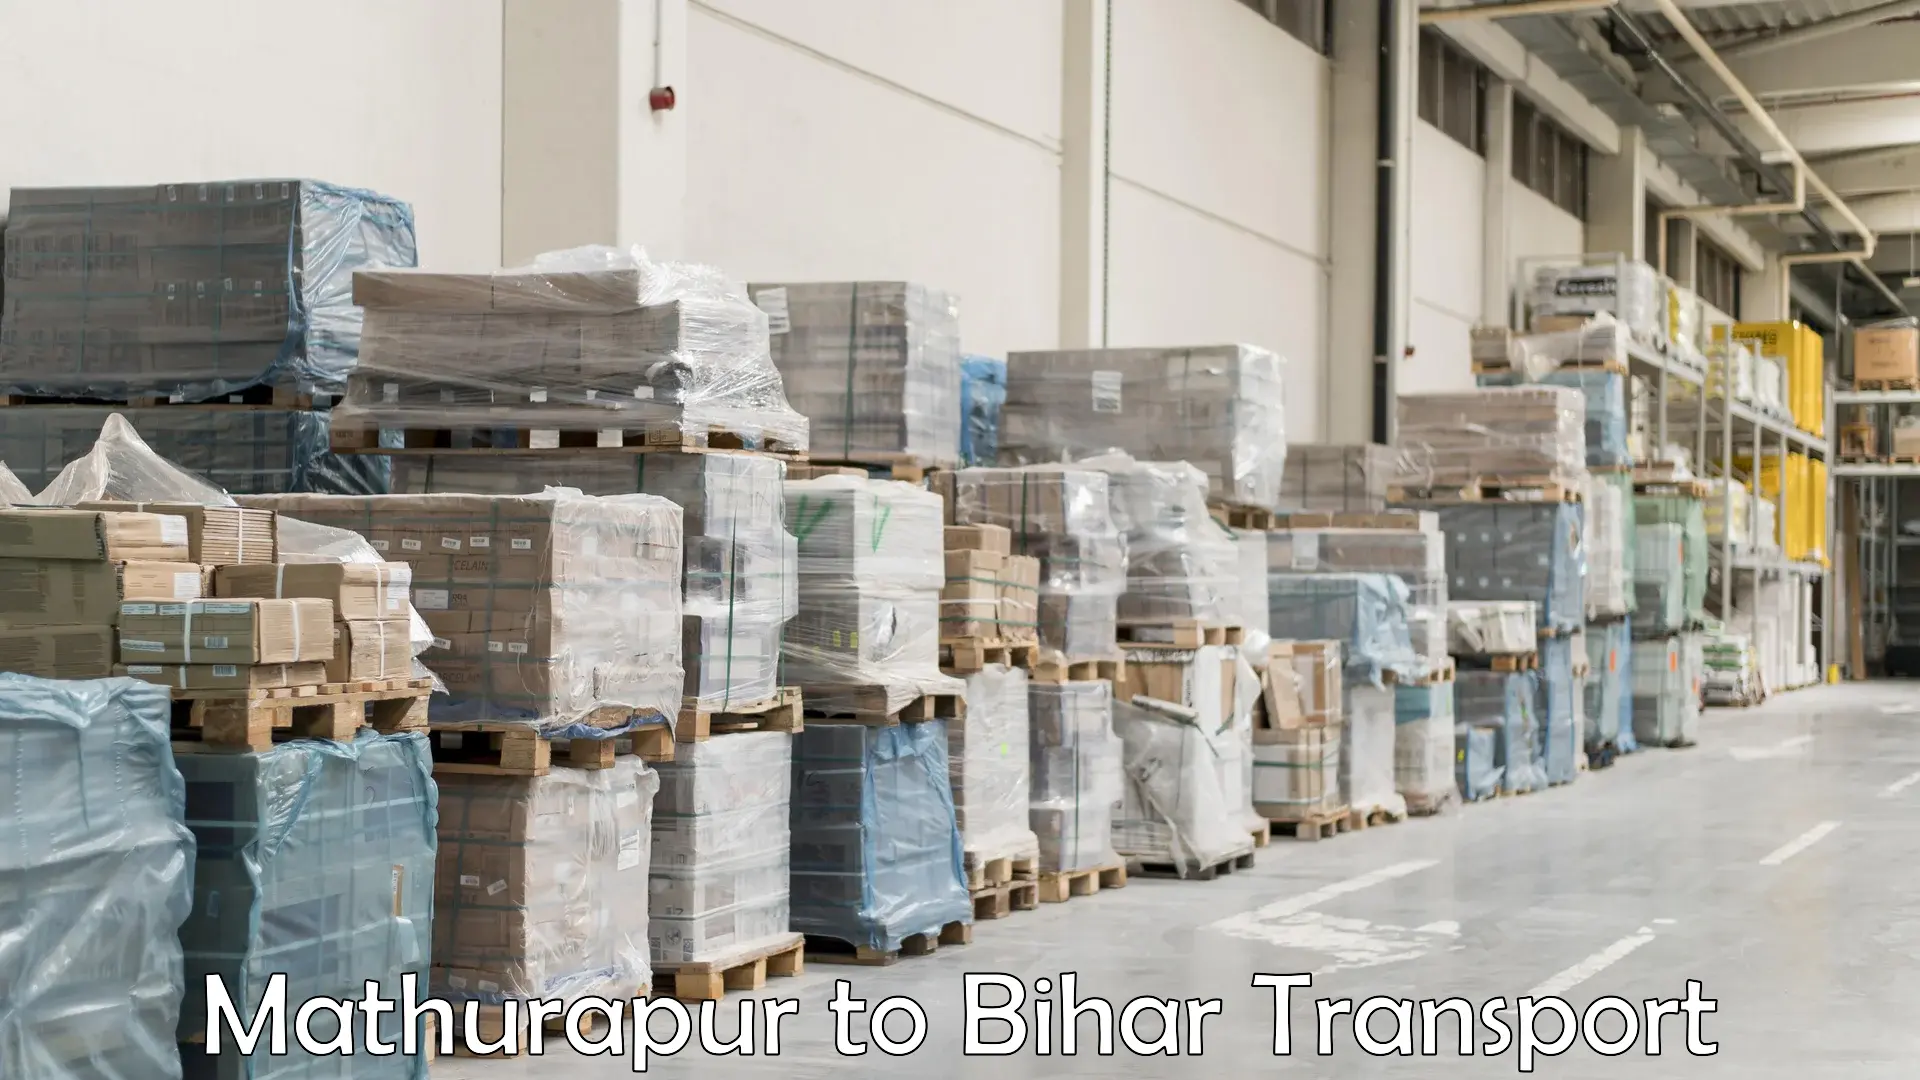 Material transport services Mathurapur to Bihar